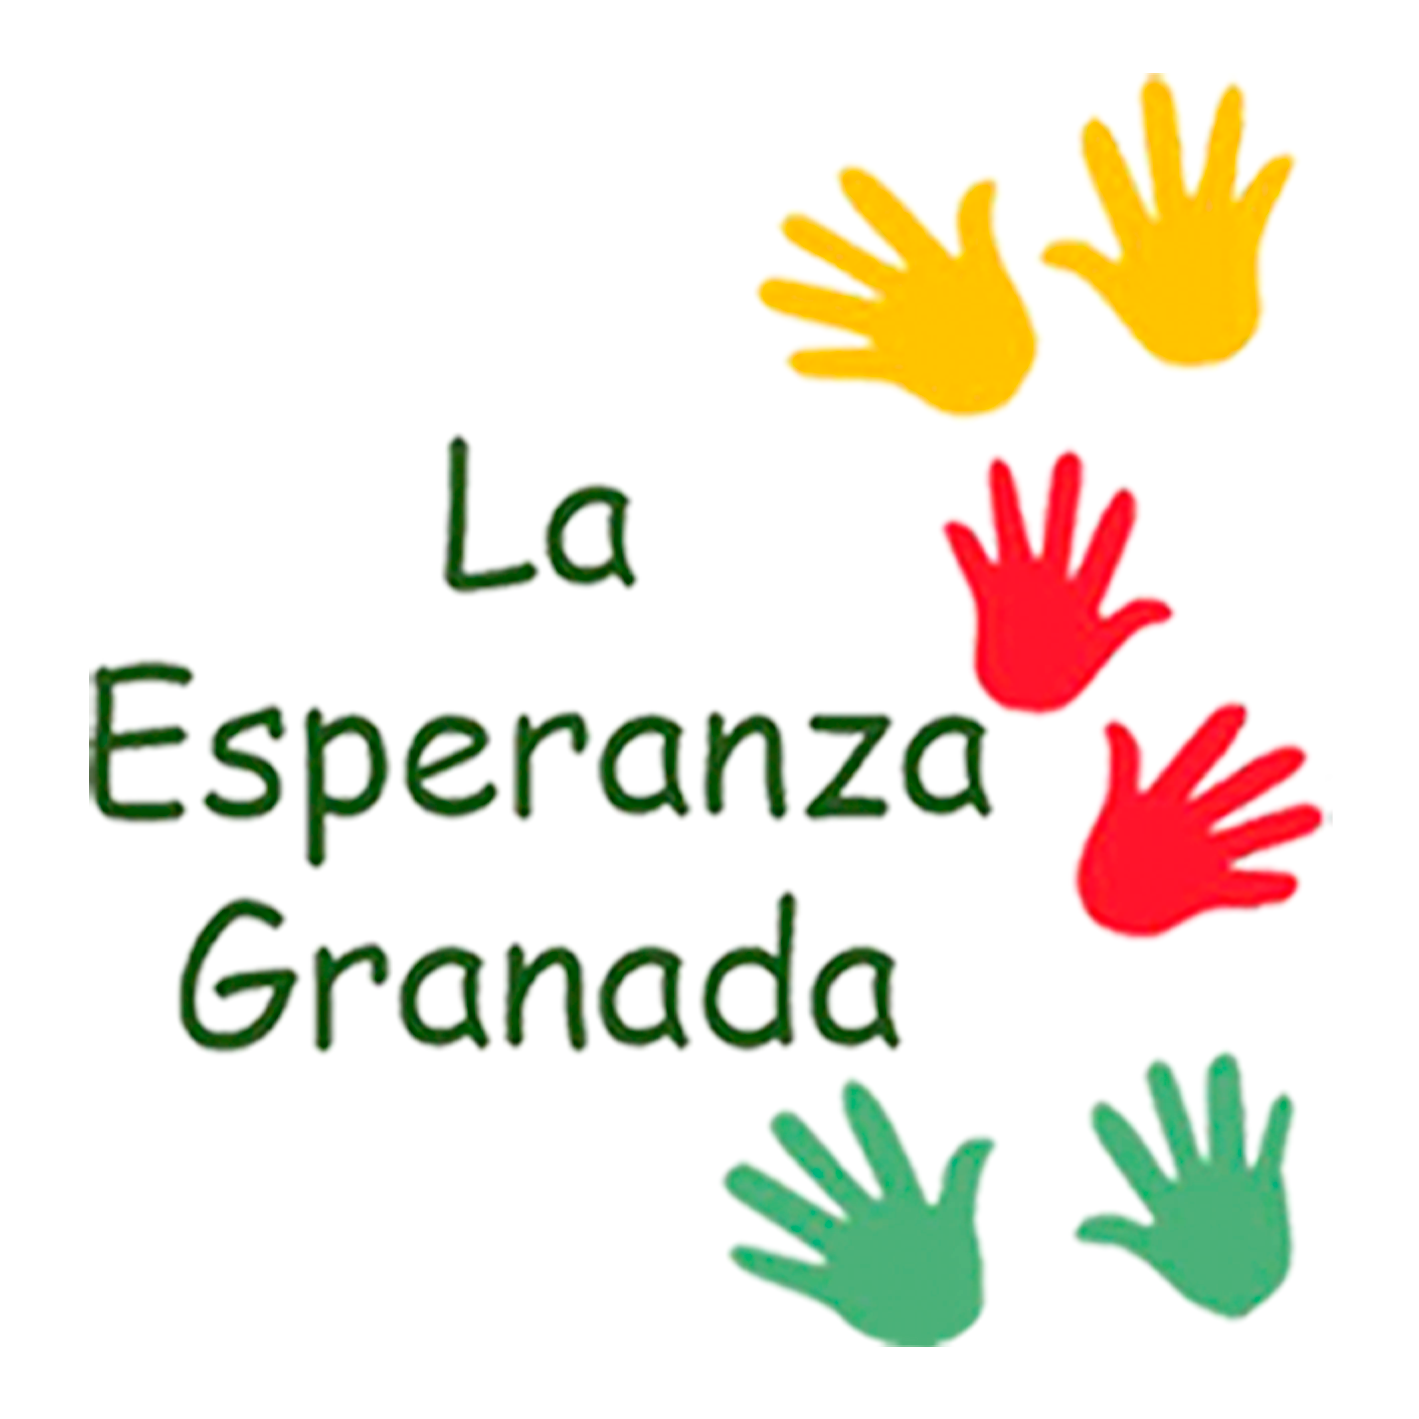 La Esperanza Granada – Giving a Hand Up, Not a Hand Out